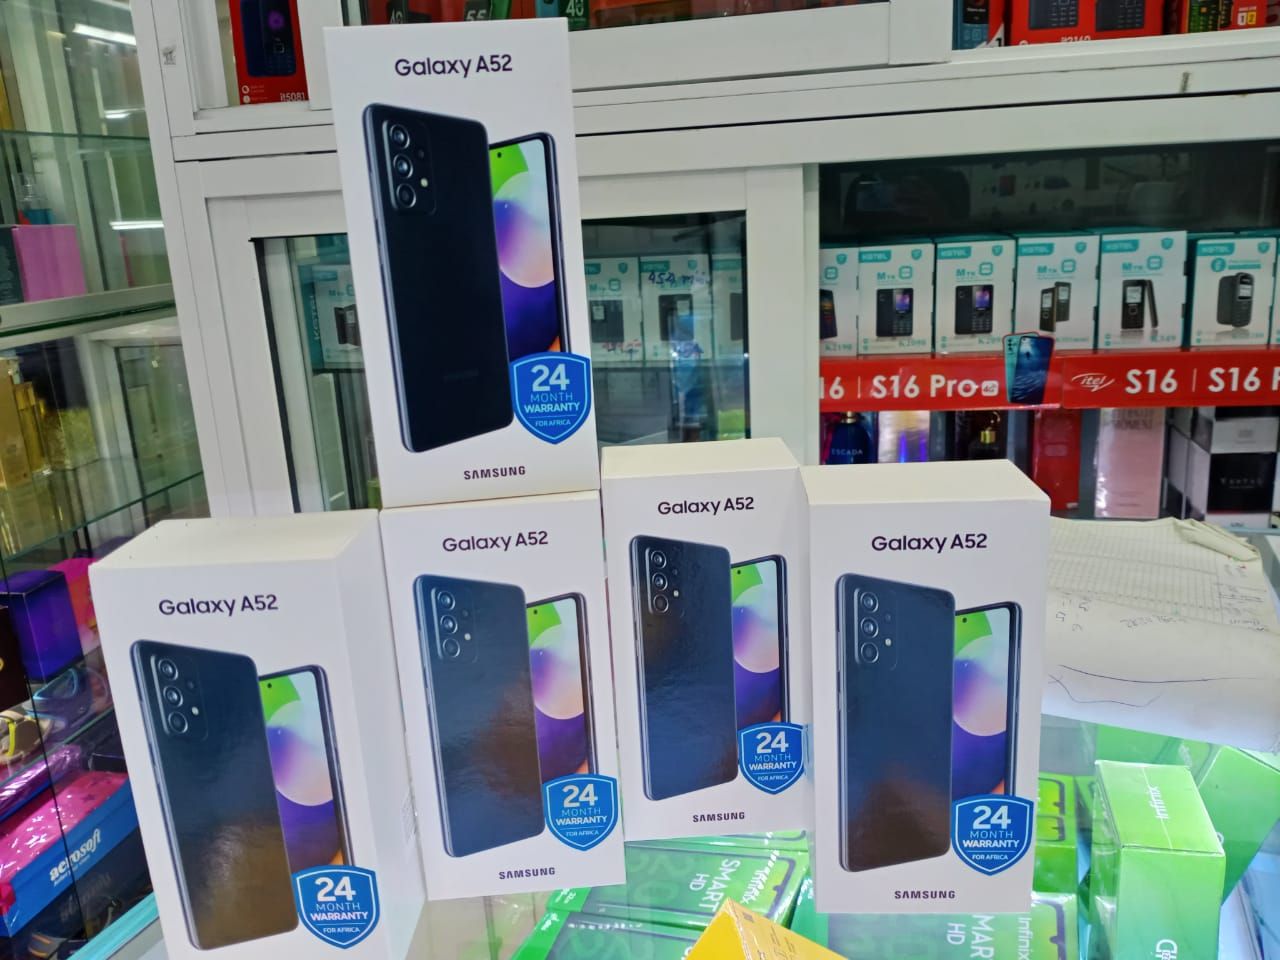 Samsung Phones Prices in Kenya